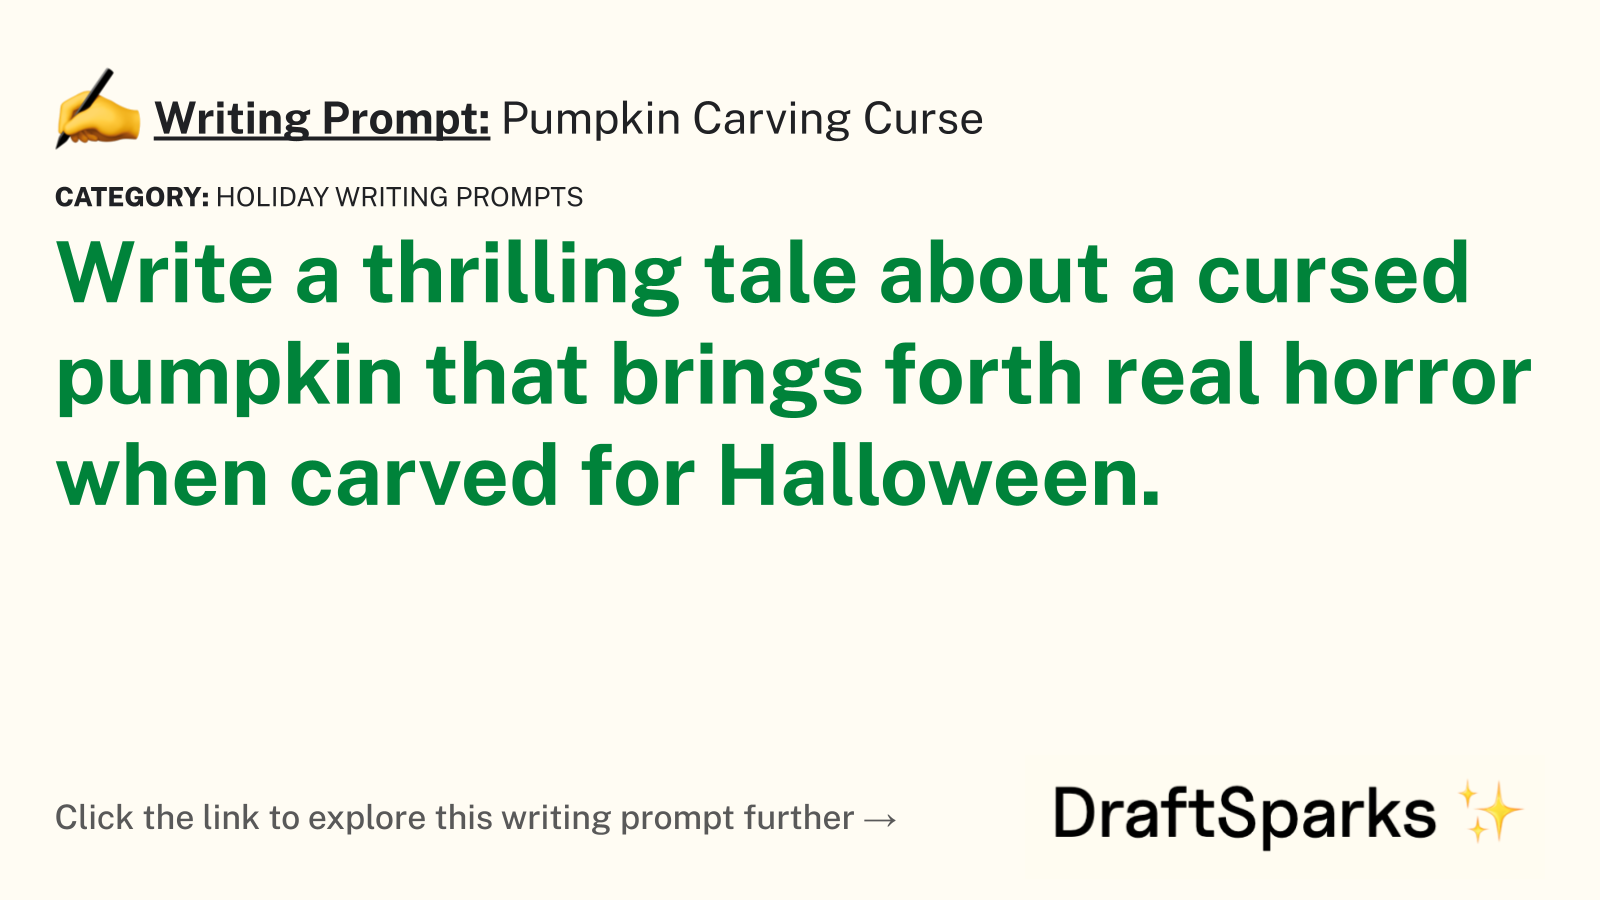 Pumpkin Carving Curse